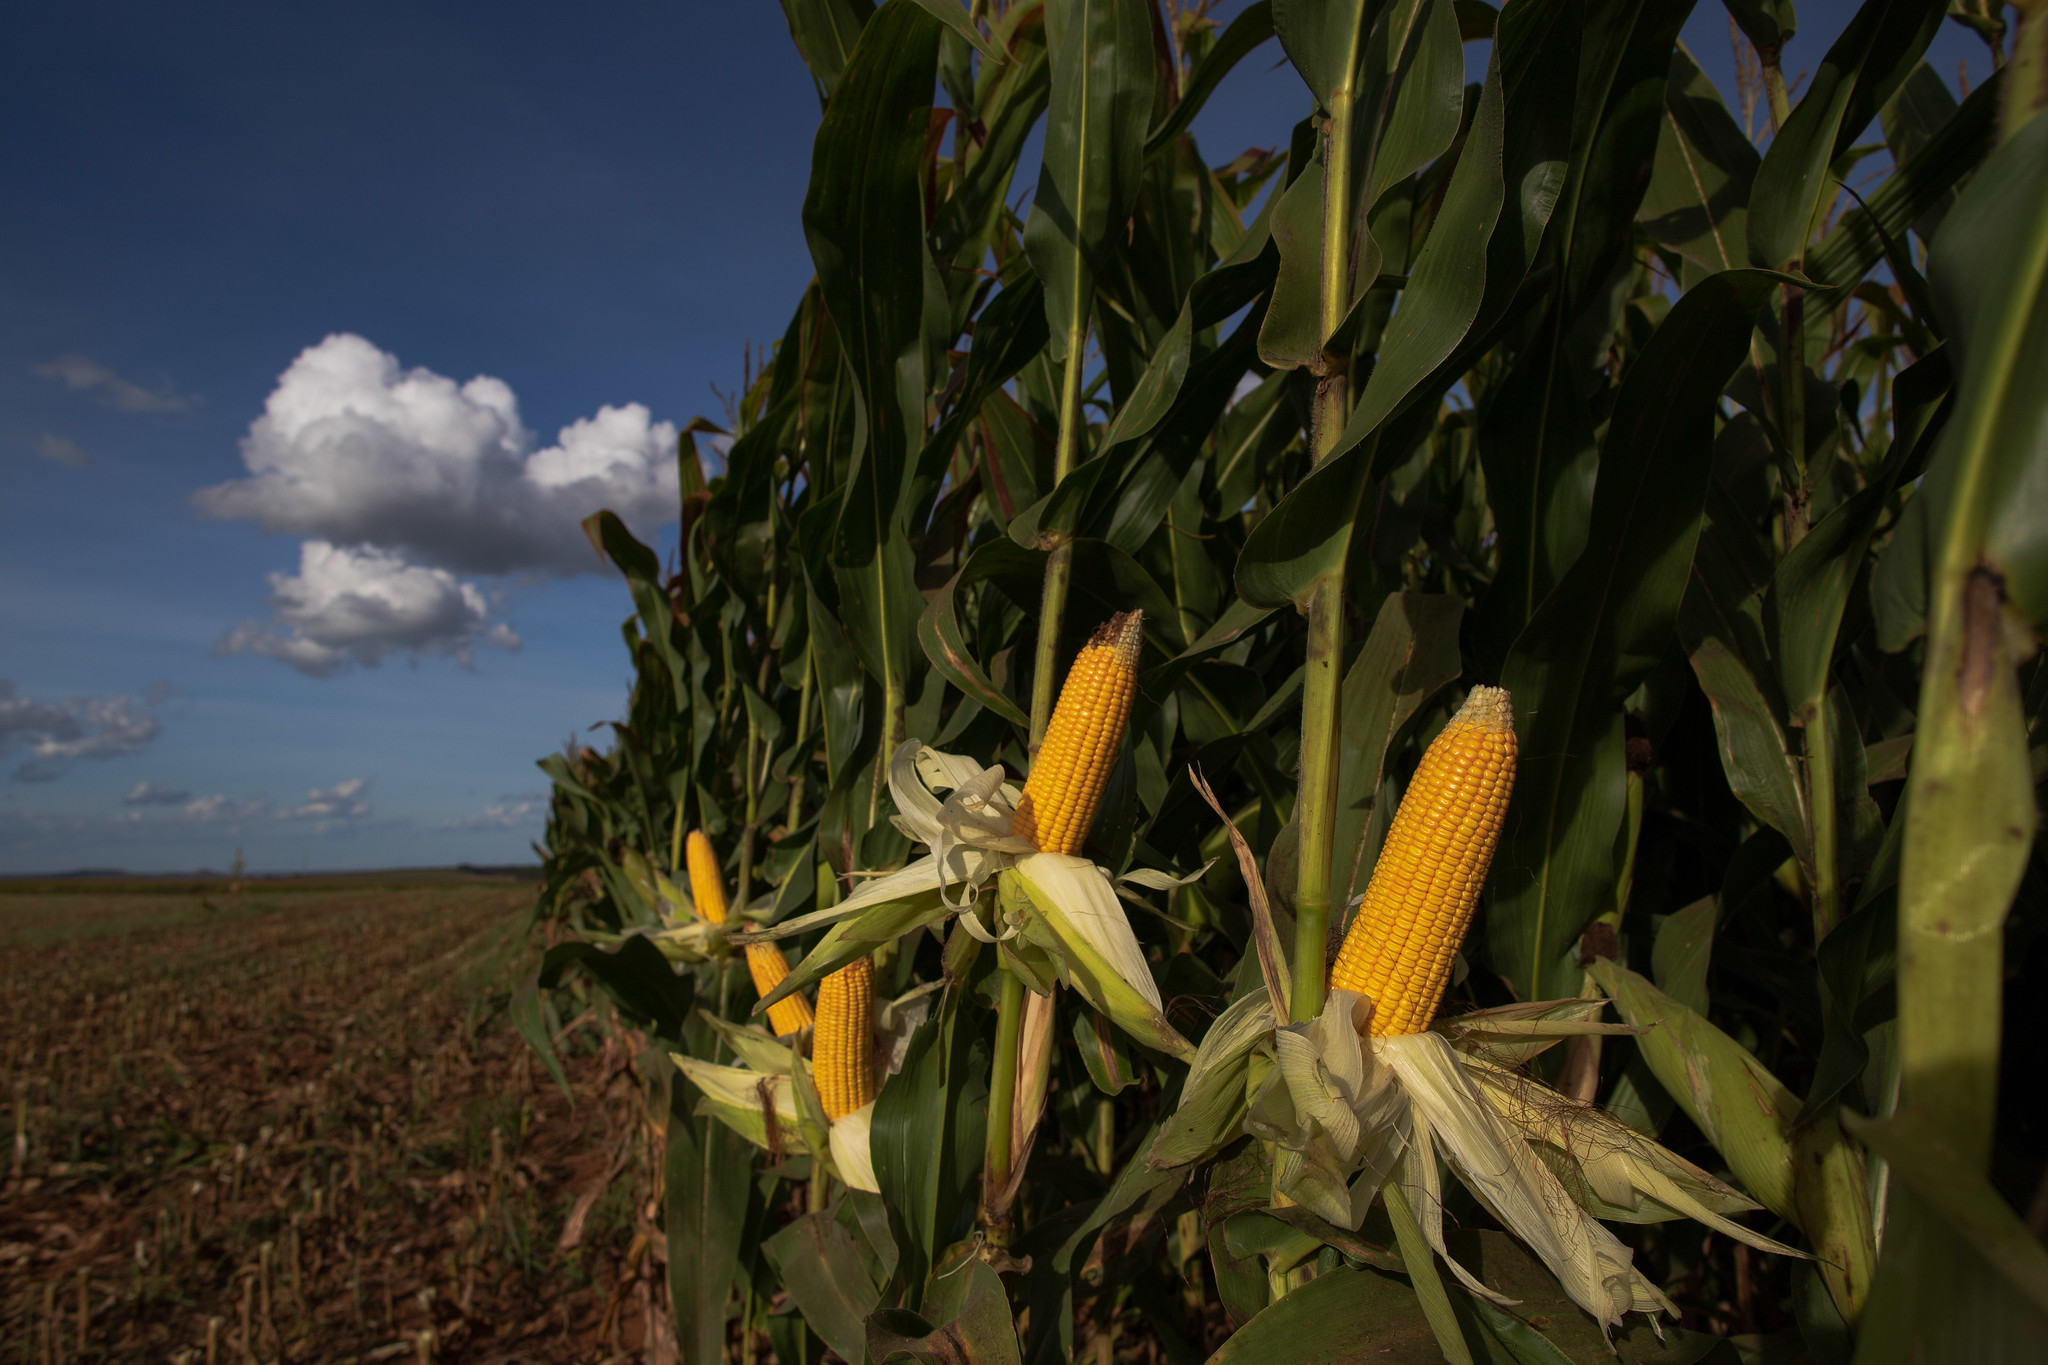 Relatório climático da hEDGEpoint Global Markets detalha os efeitos do La Niña no mercado global de soja, milho e trigo